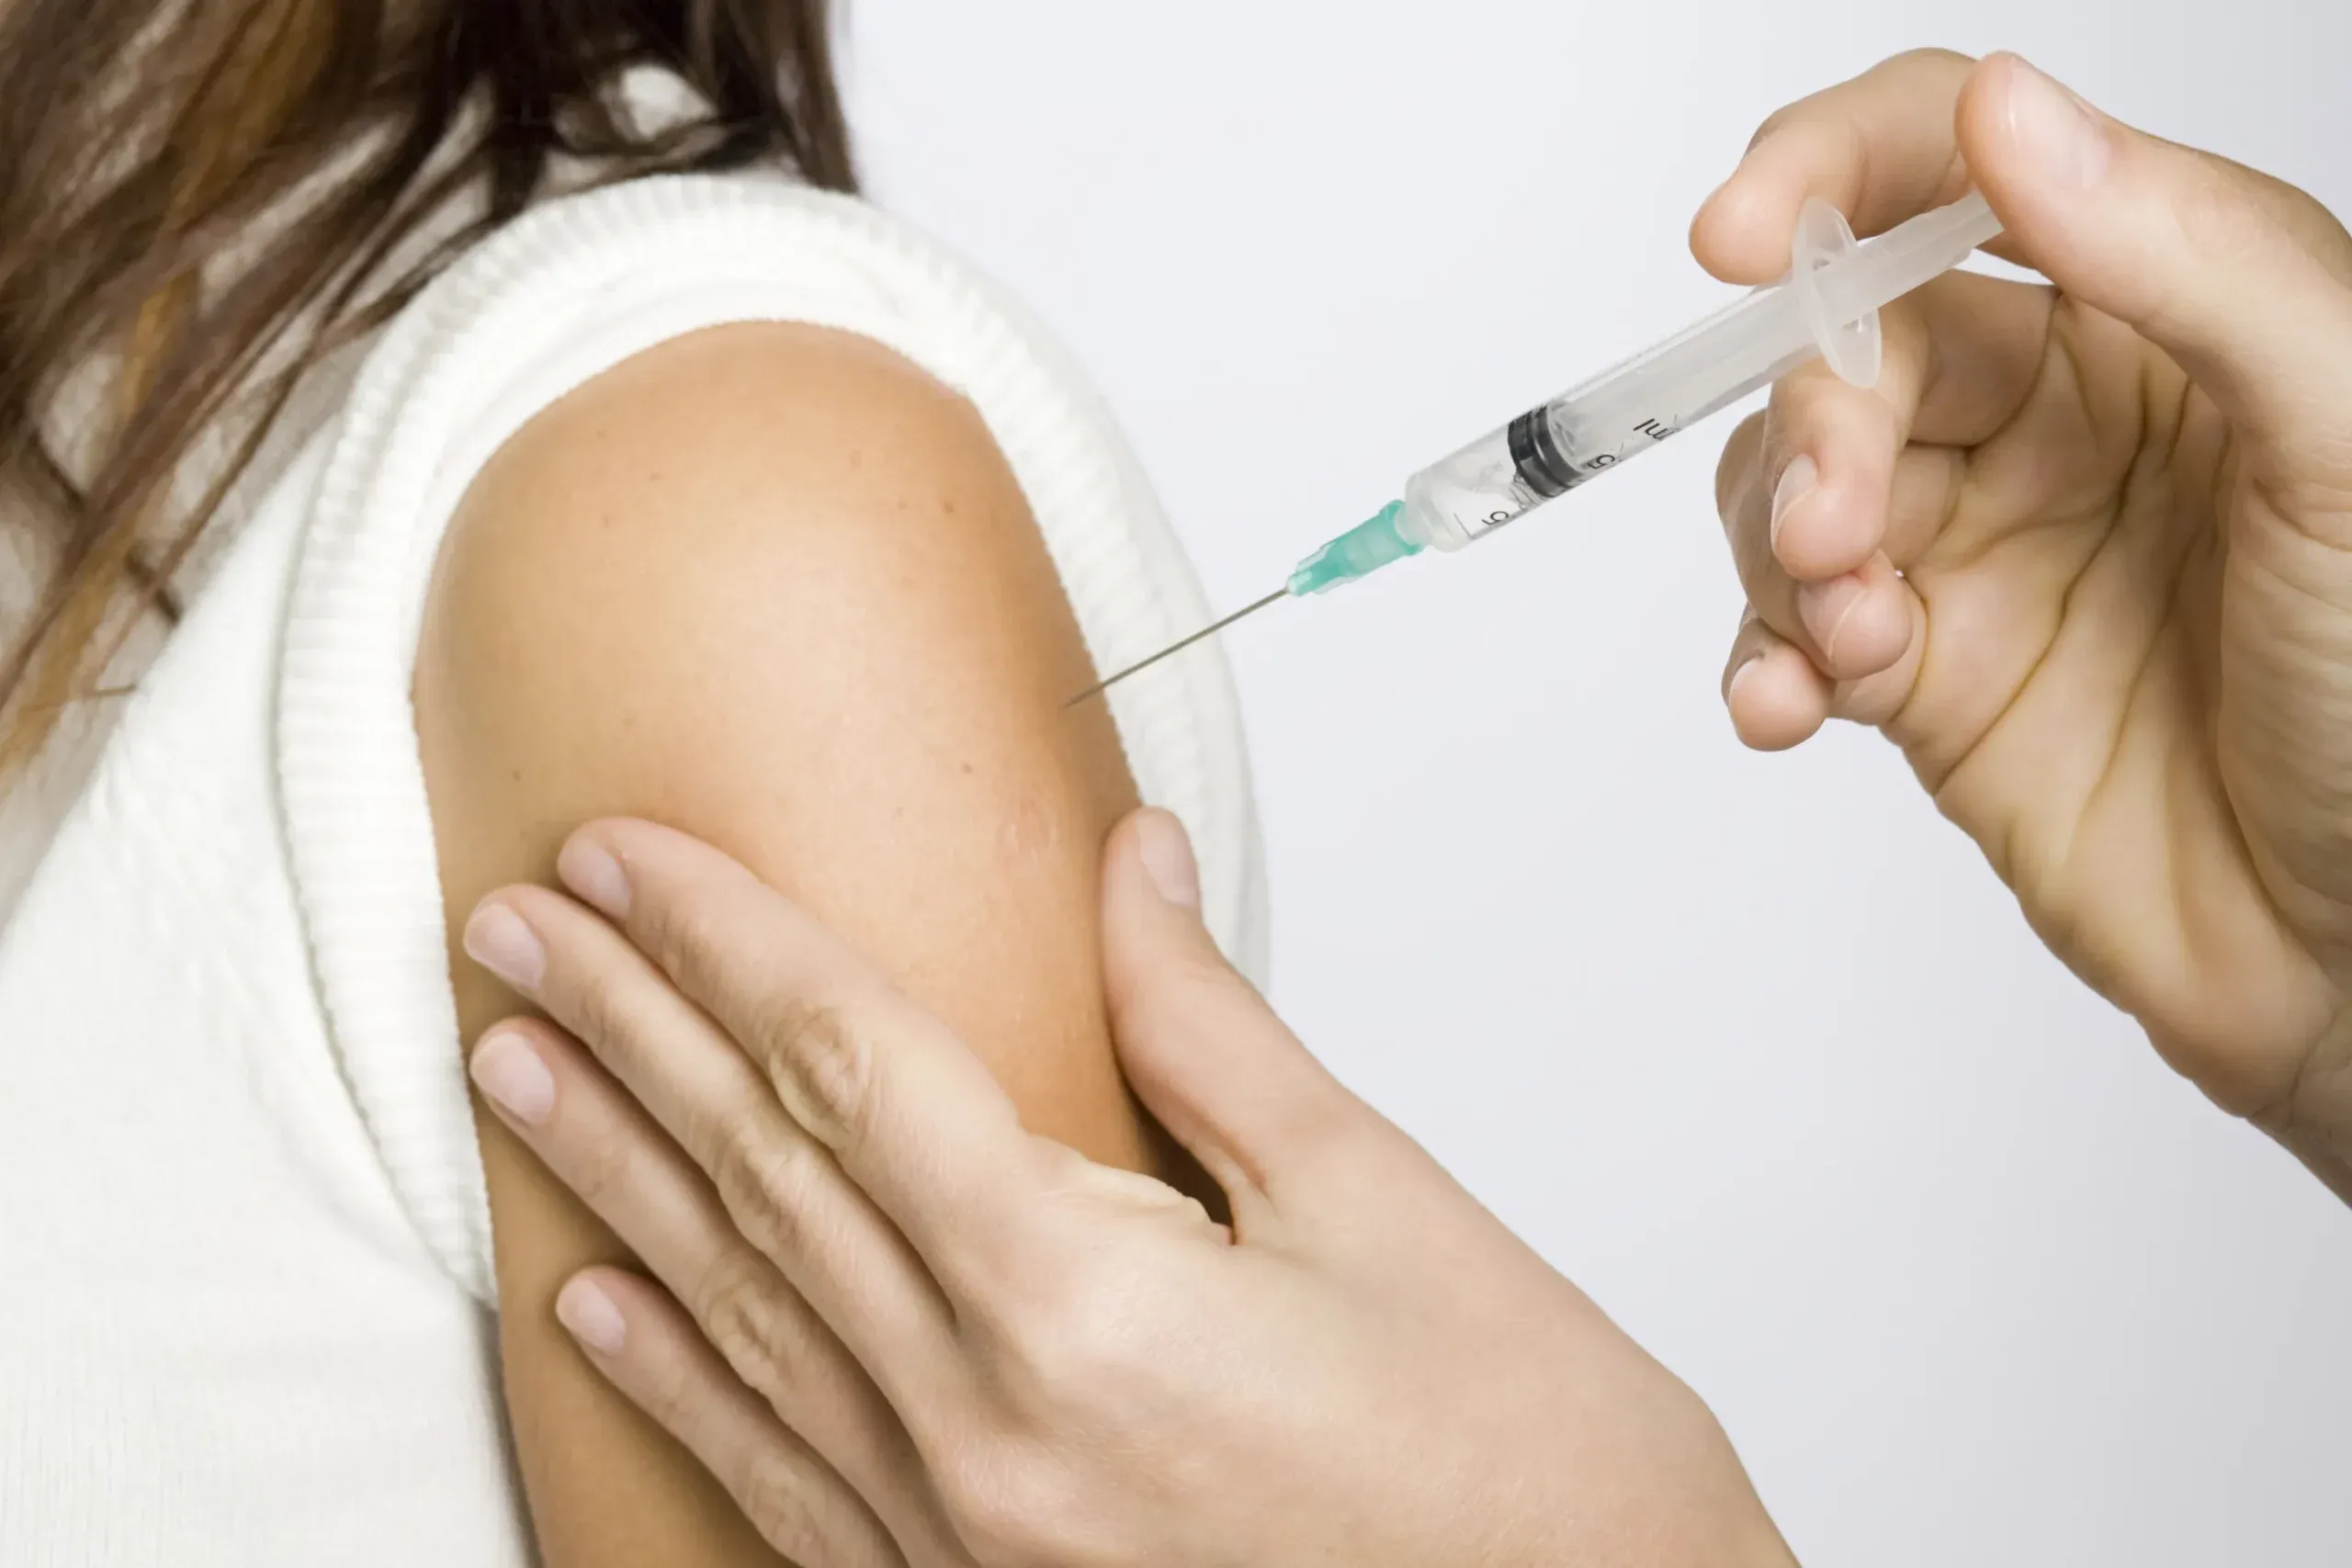 Se recomienda aplicarse la vacuna para evitar ser víctima de la influenza. Está disponible en los distintos establecimientos de salud y hospitales del Estado, completamente gratis.